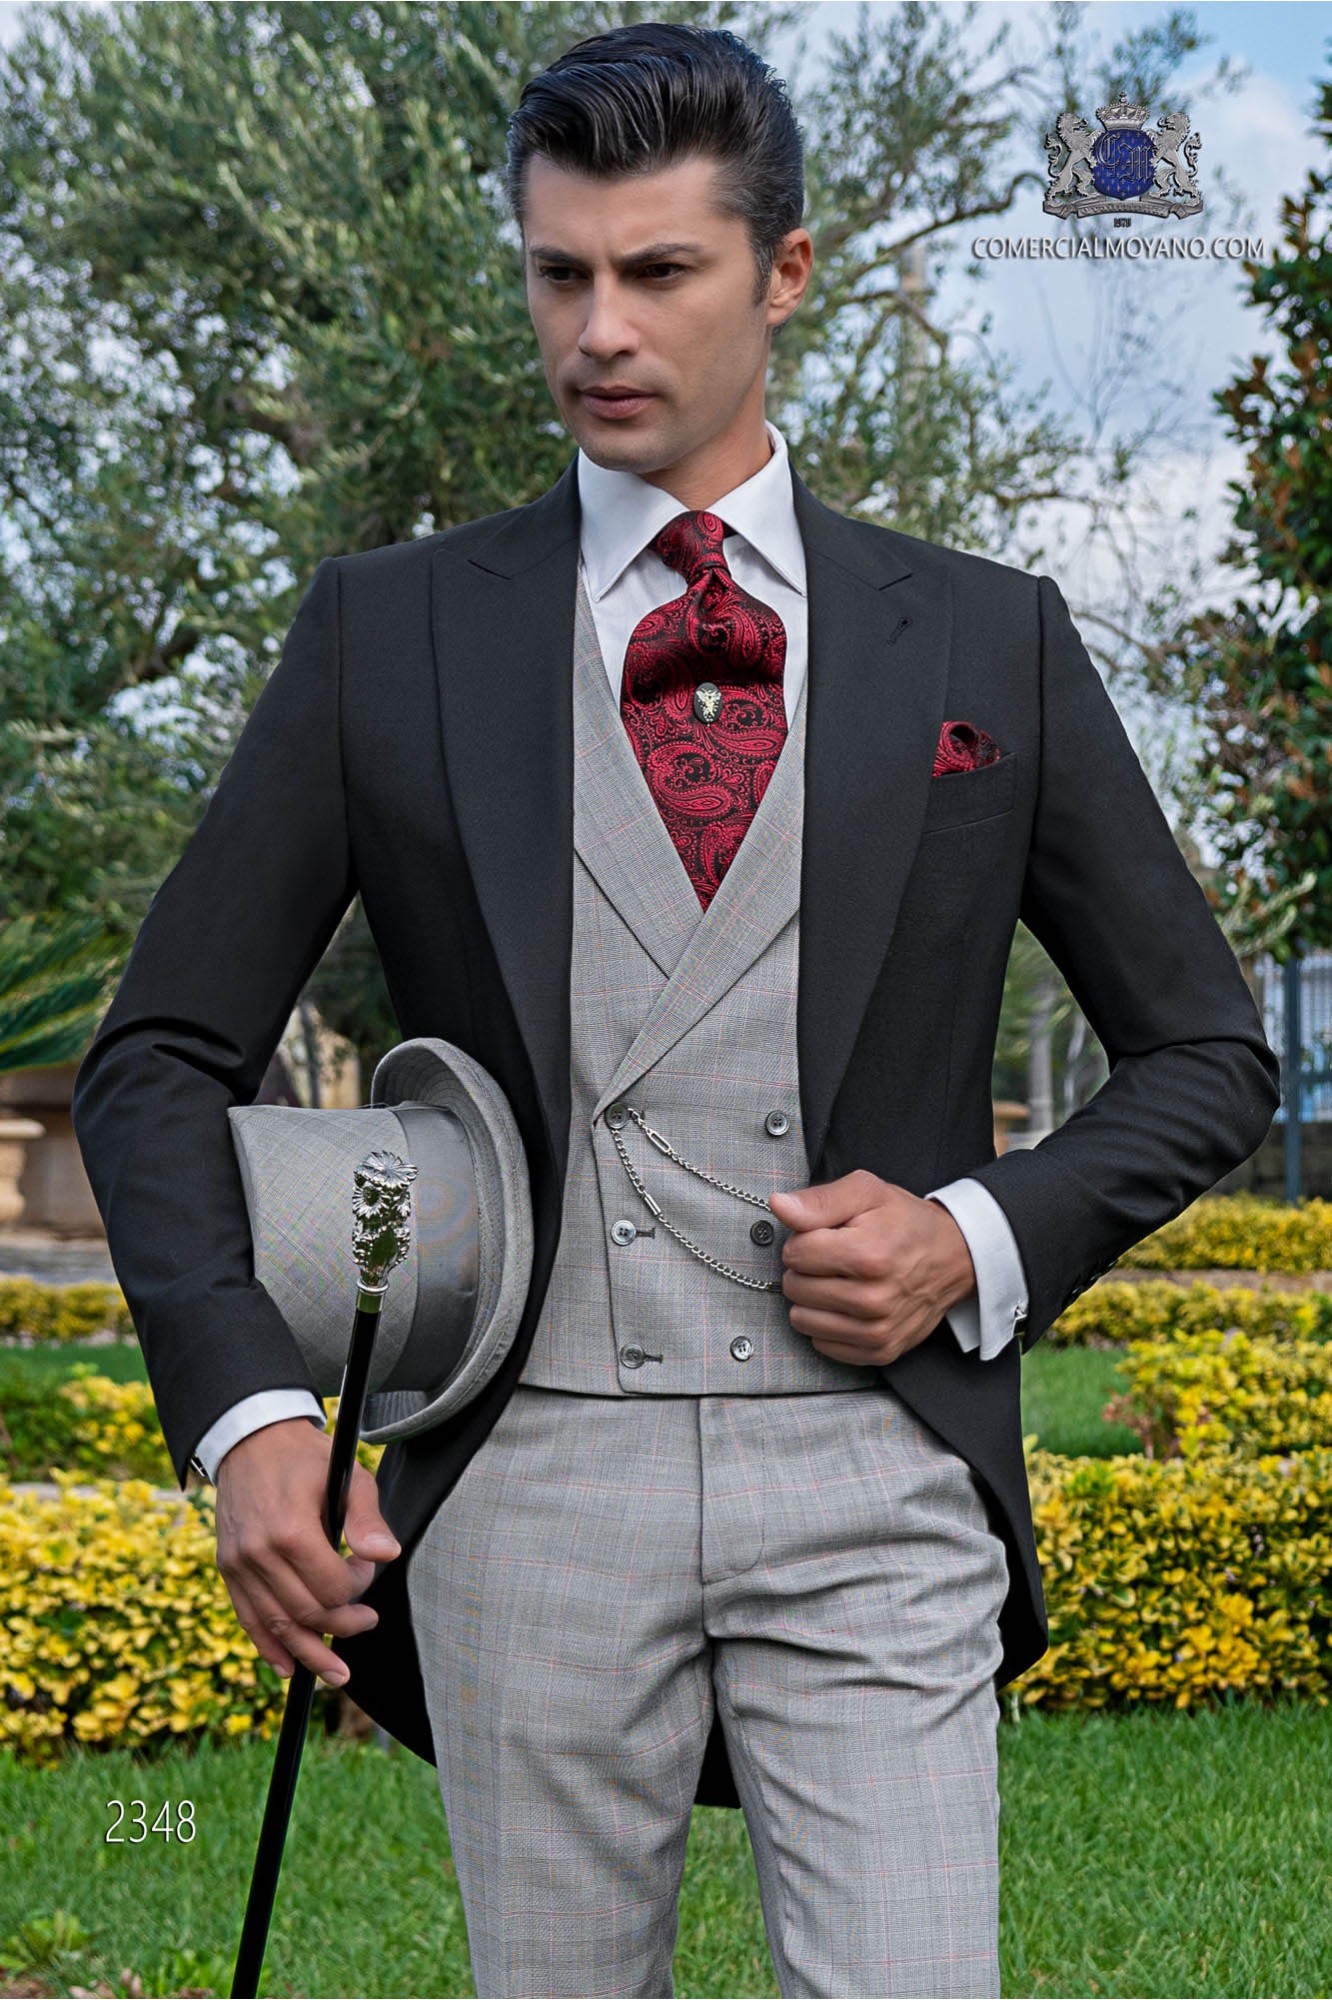 Chaqué de novio negro tejido lana con pantalón y chaleco príncipe de gales modelo: 2348 Mario Moyano colección Gentleman